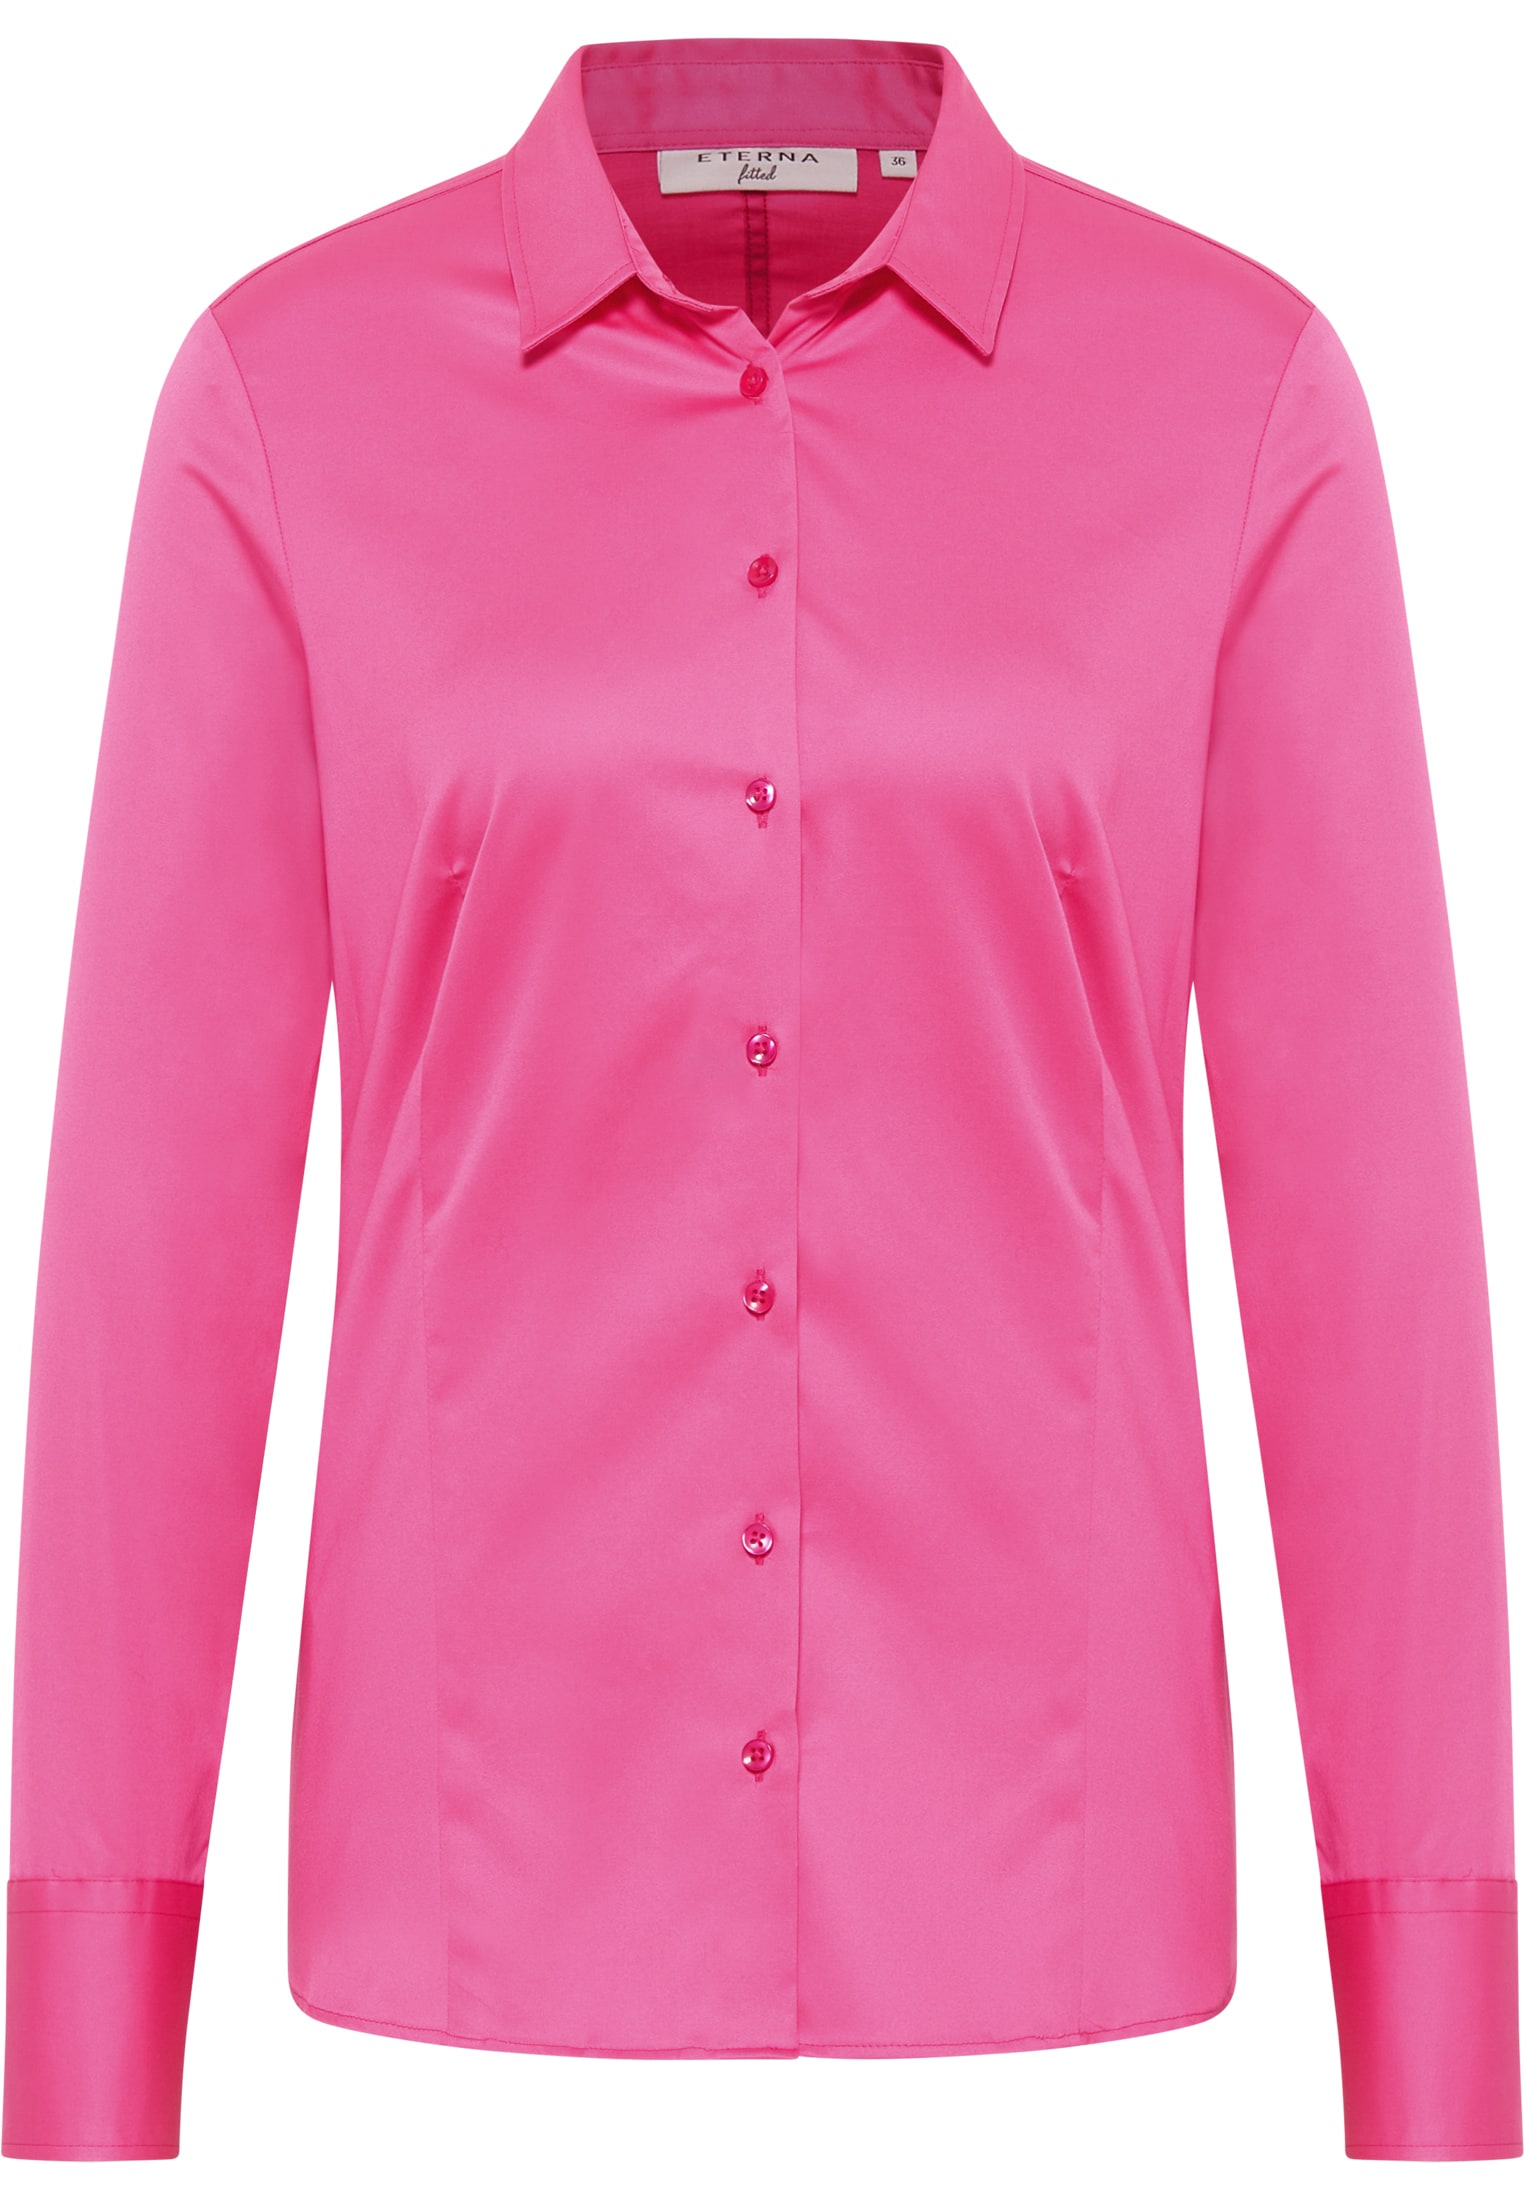 Satin Shirt Bluse pink 36 pink unifarben | | | | in 2BL04012-15-21-36-1/1 Langarm